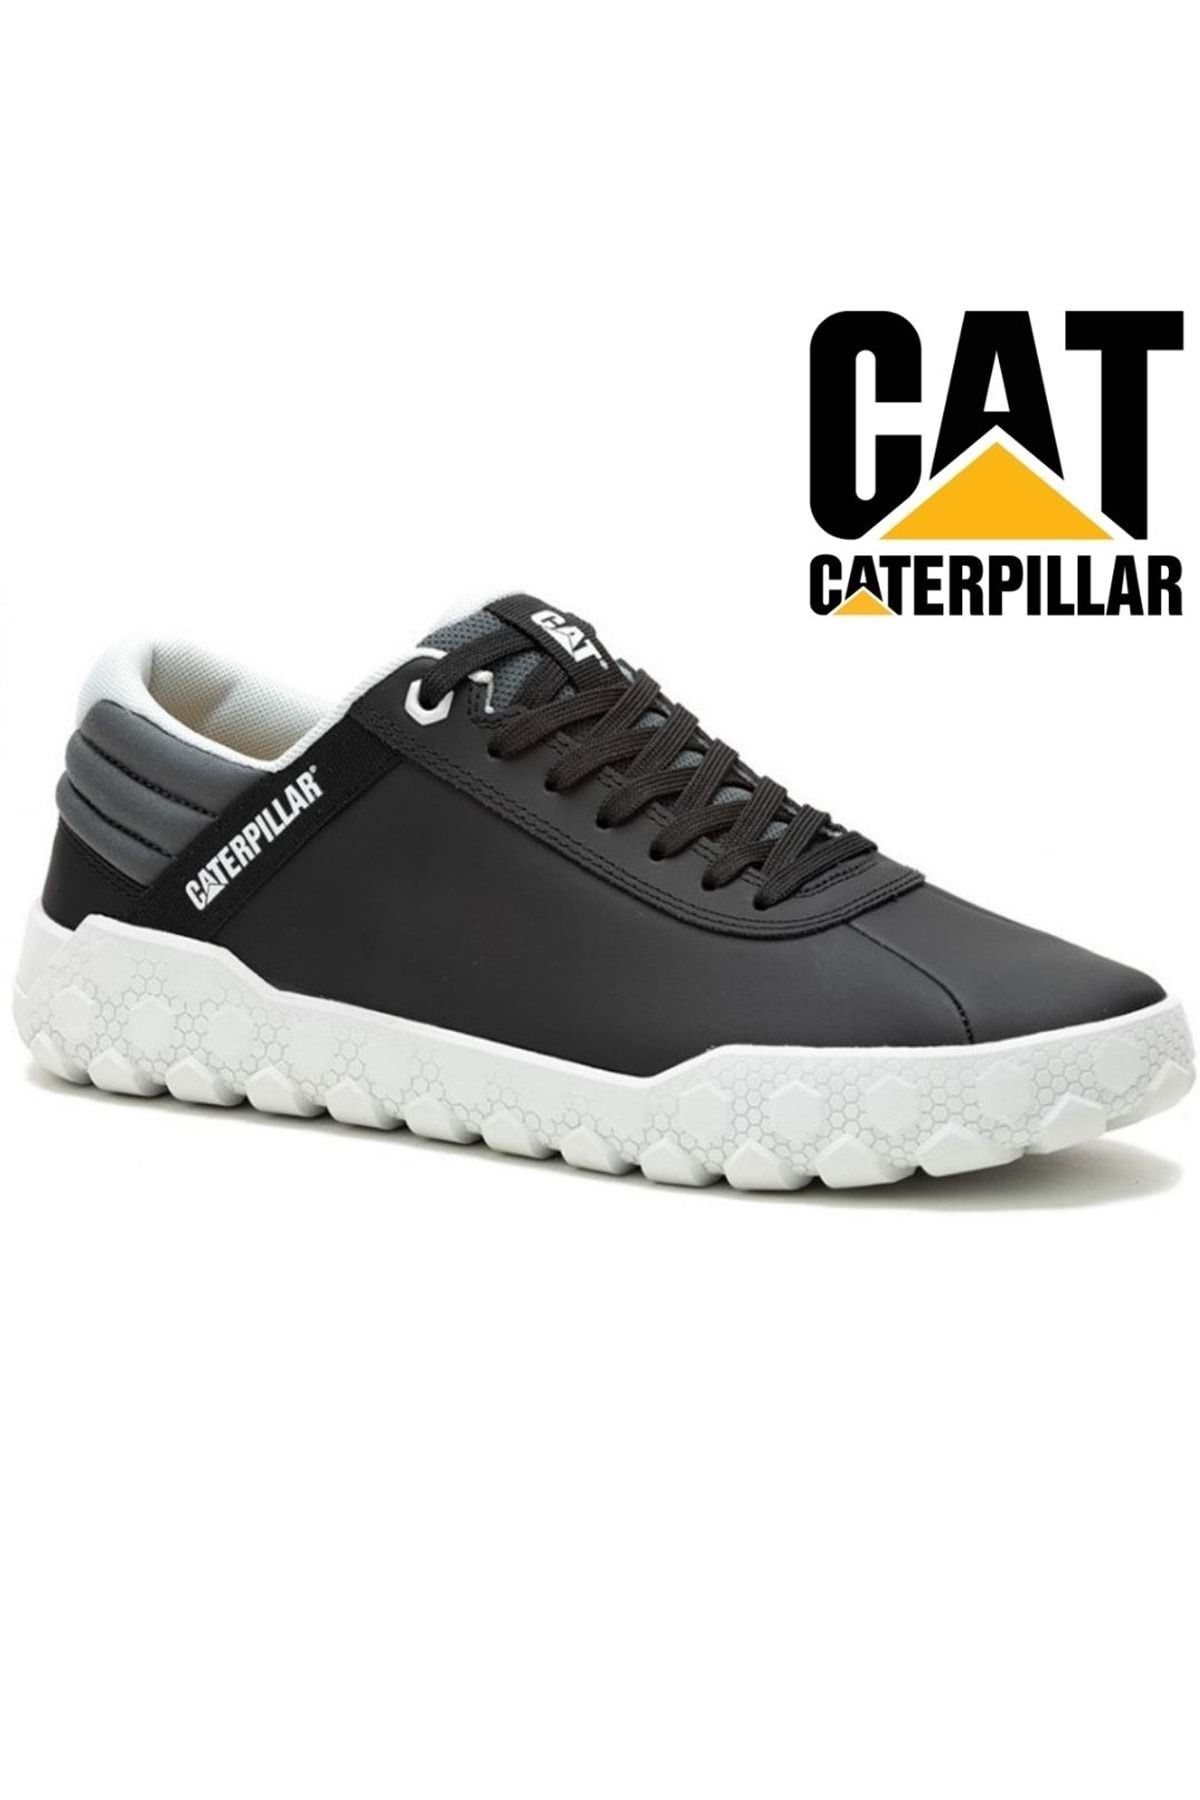 Caterpillar P111335 Hex Shoes Casual Erkek Ayakkabı Siyah-gri